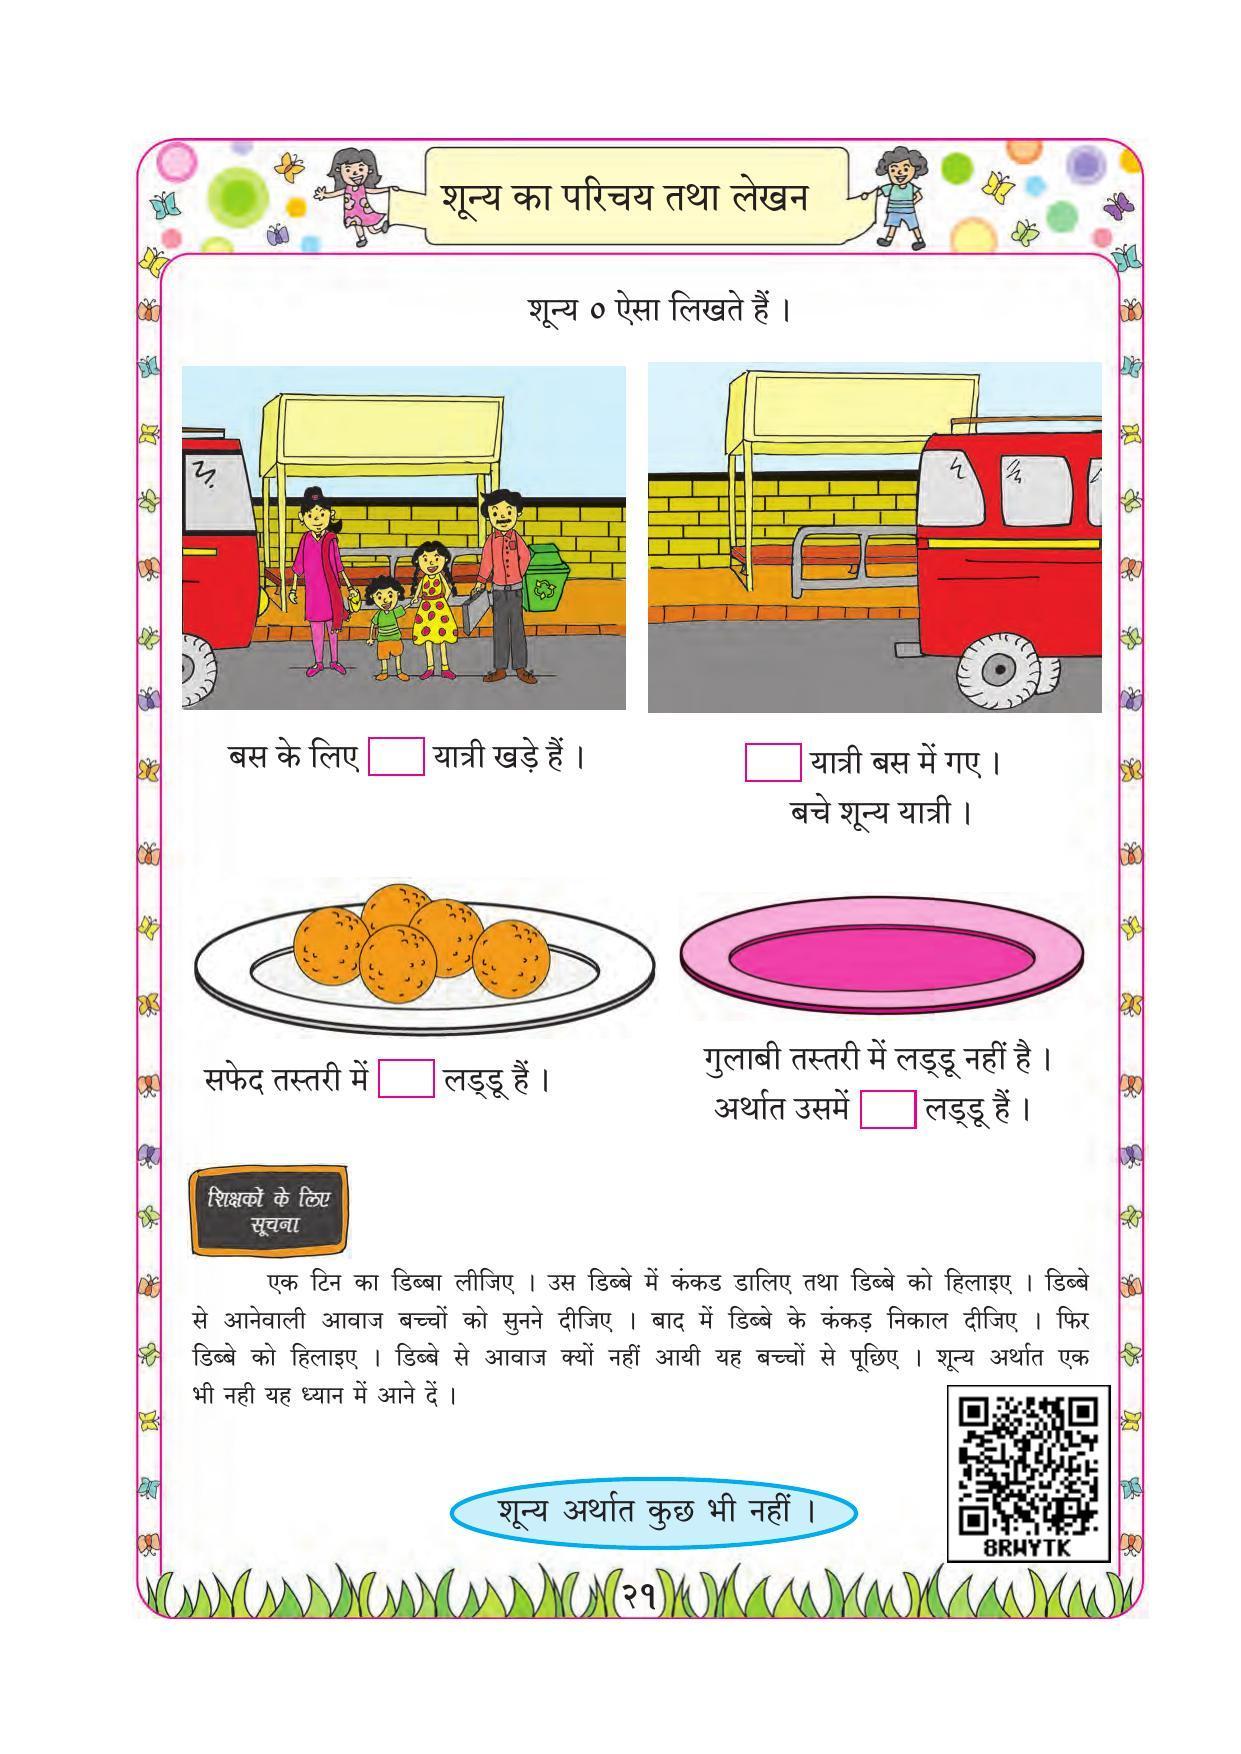 Maharashtra Board Class 1 Maths (Hindi Medium) Textbook - Page 31